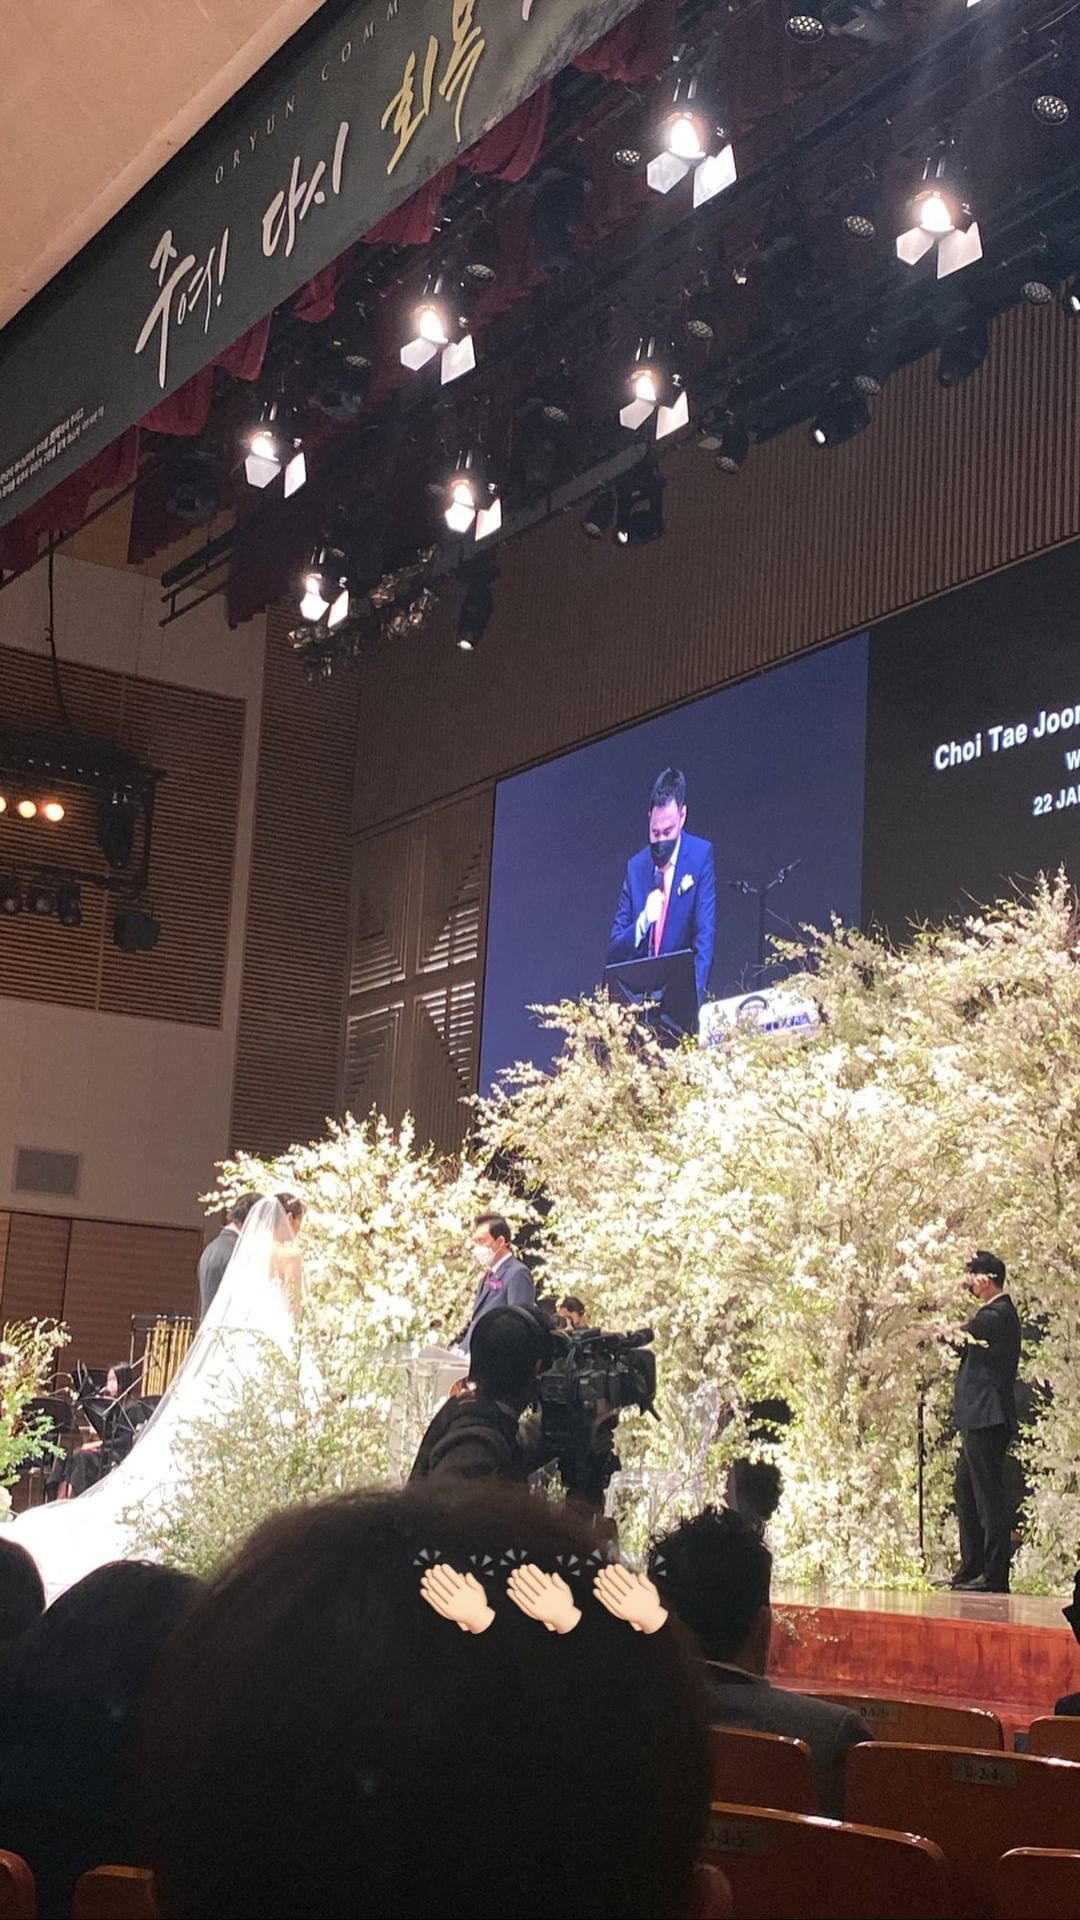 Siêu đám cưới Park Shin Hye: Cô dâu diện váy khủng cùng chú rể thề nguyện trên lễ đường trắng tinh, quân đoàn khách mời dần lộ diện - Ảnh 4.